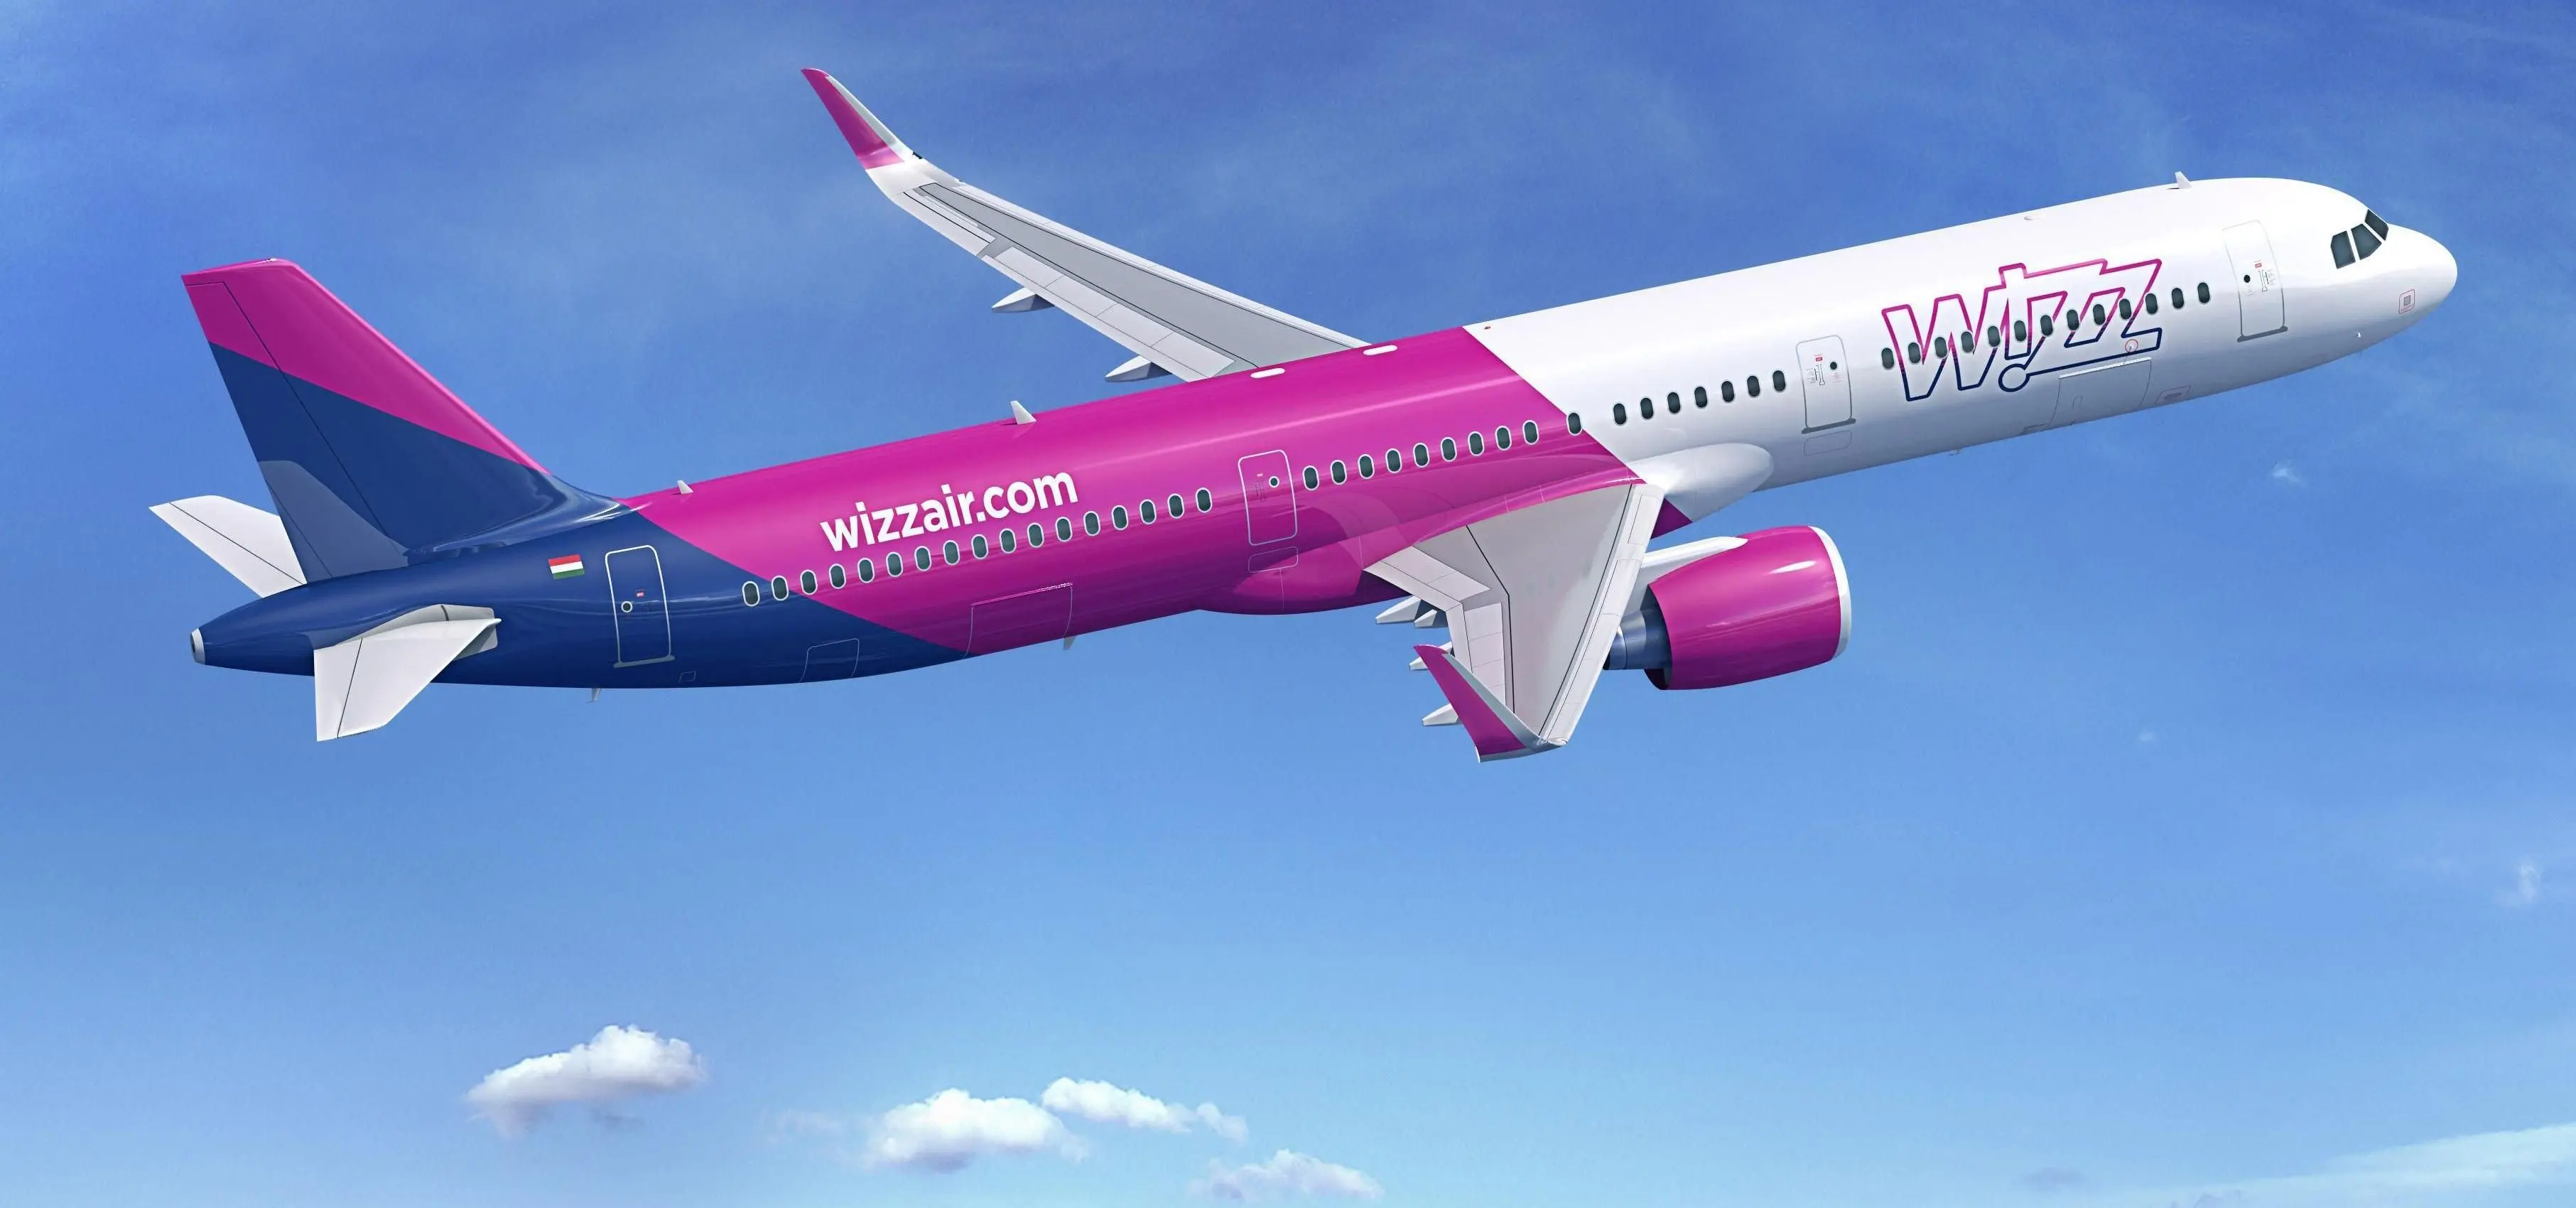 У компанії Wizz Air оновили правила проїзду: який приємний сюрприз чекає пасажирів?